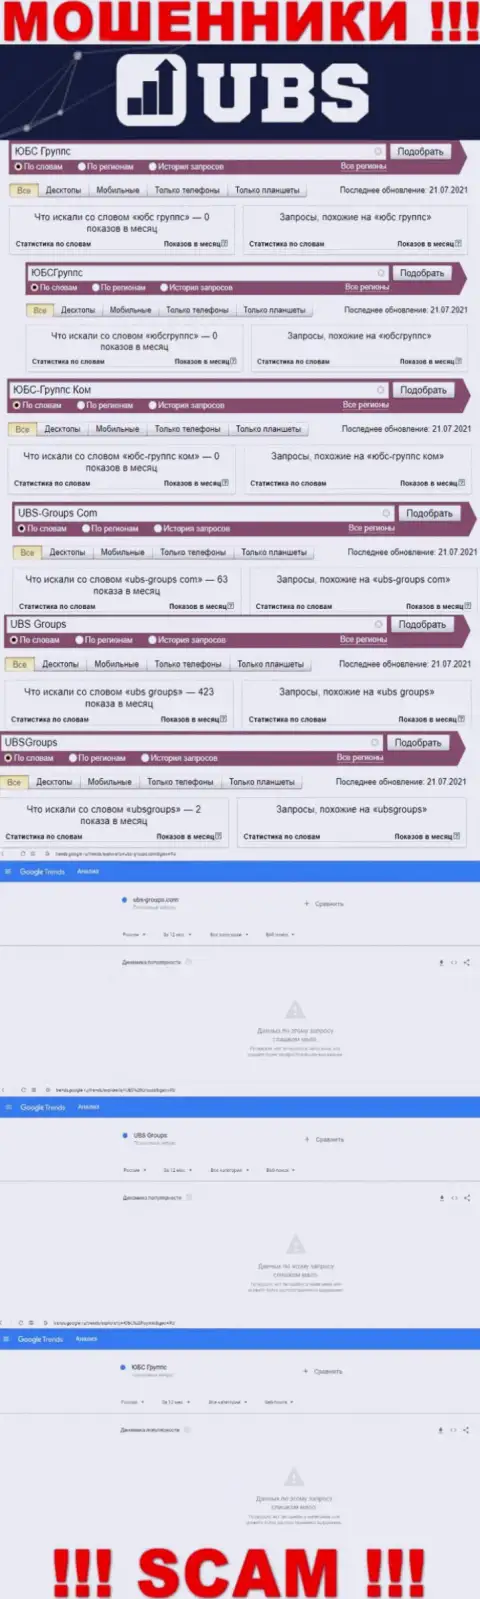 Скриншот результата online-запросов по мошеннической организации ЮБСГруппс